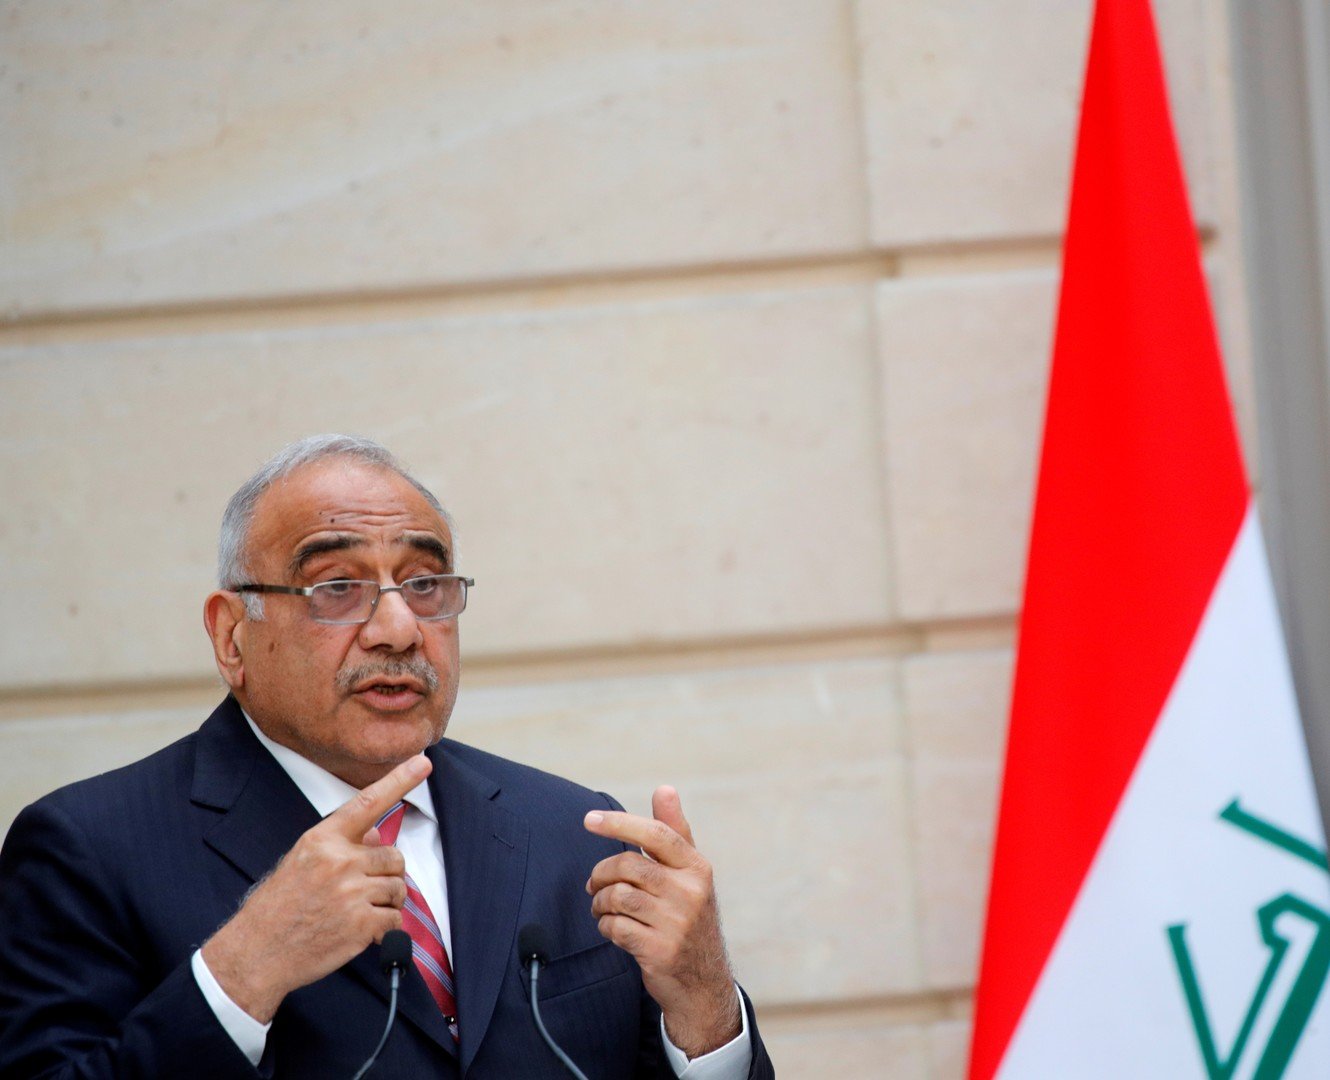 رئيس الوزراء العراقي: وضعنا بدائل استراتيجية حال إغلاق مضيق هرمز